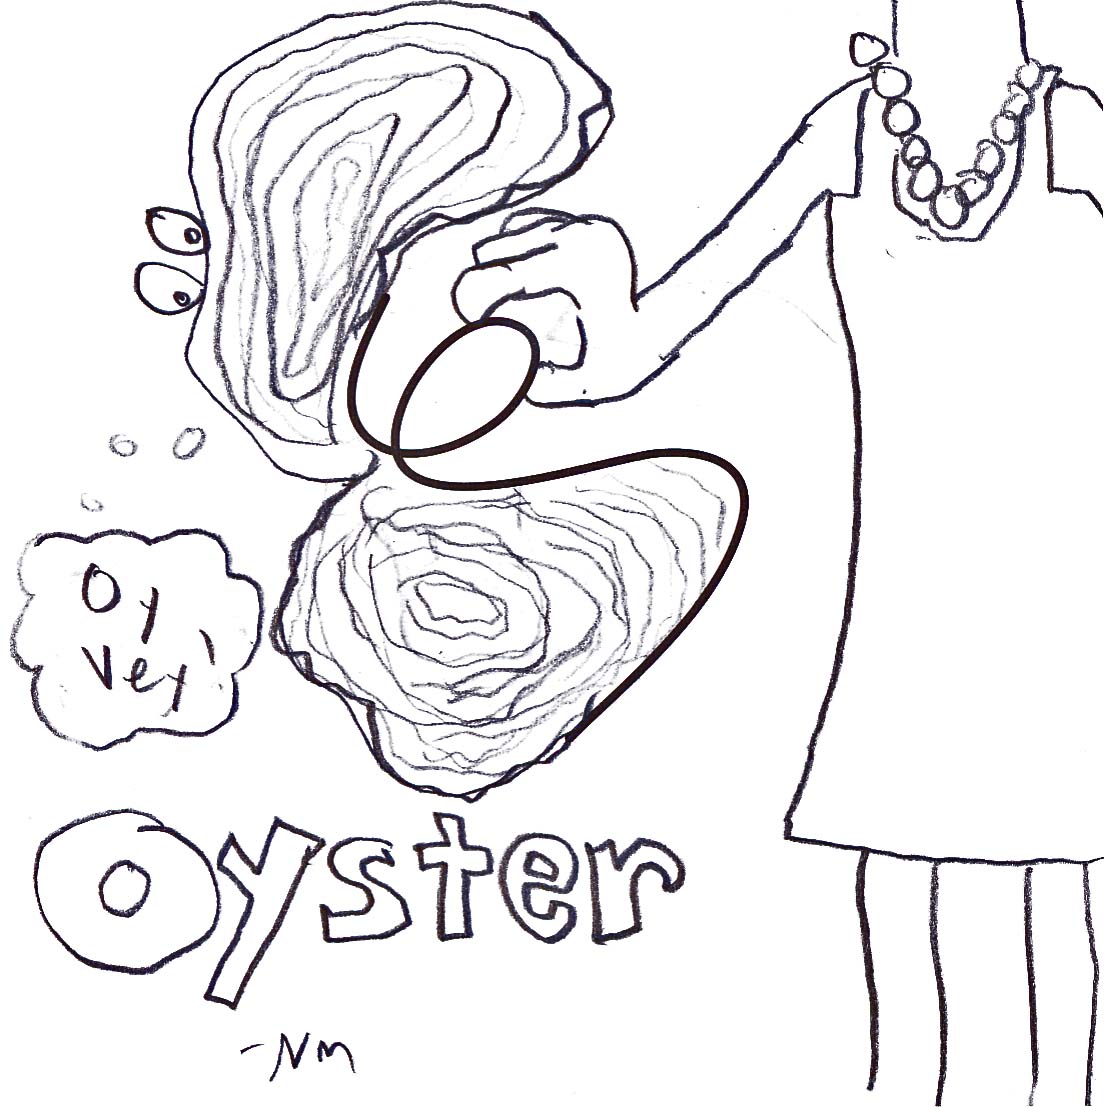 Oy Vey! Oyster